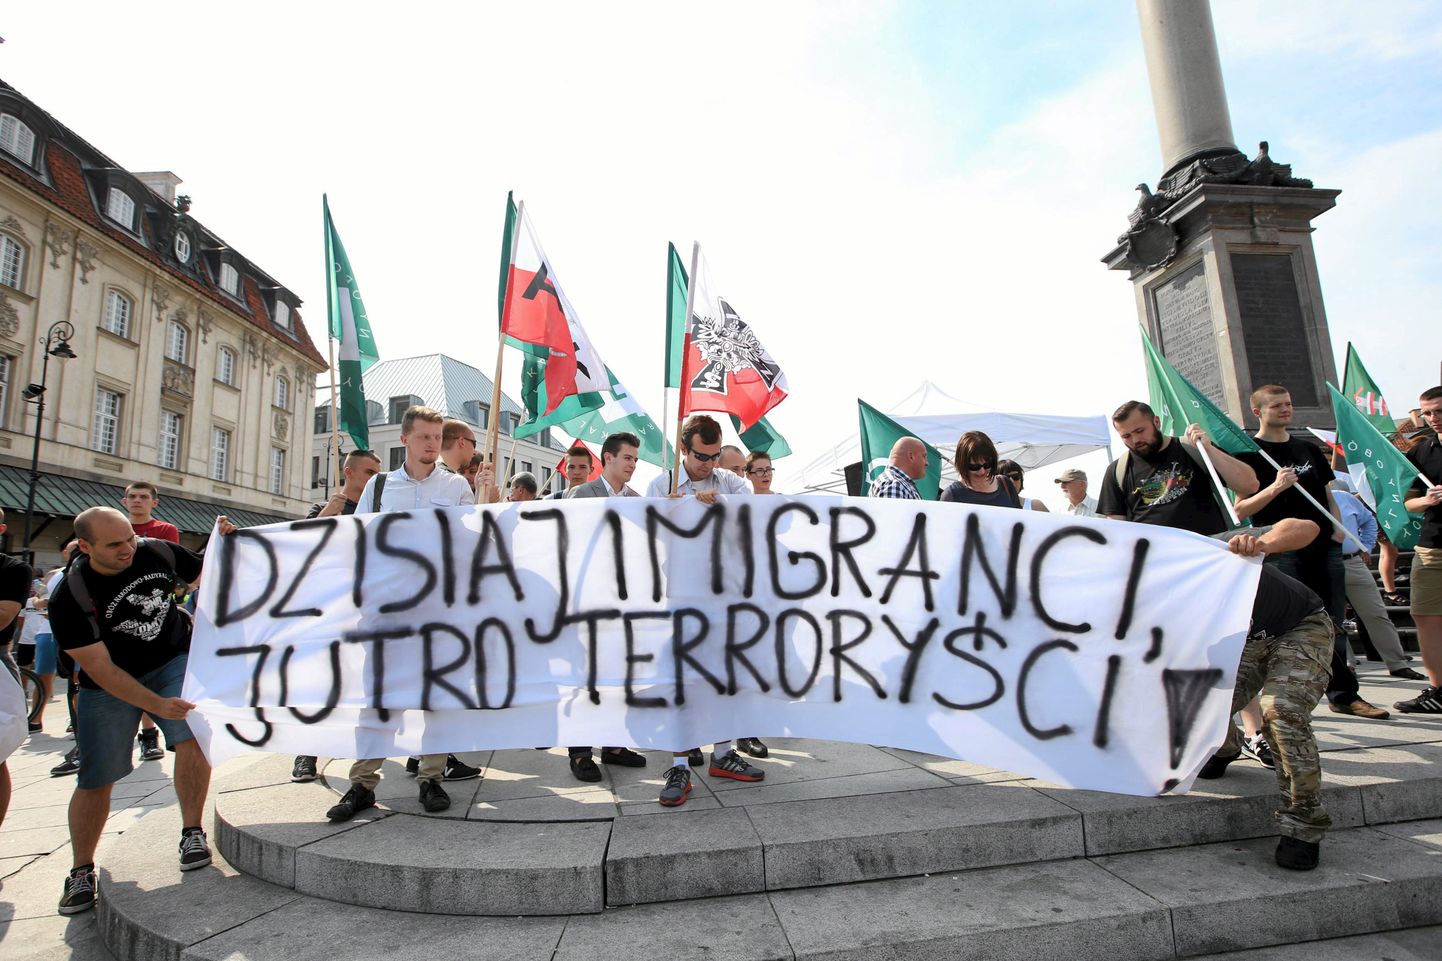 Poola migrantide vastane demonstratsioon